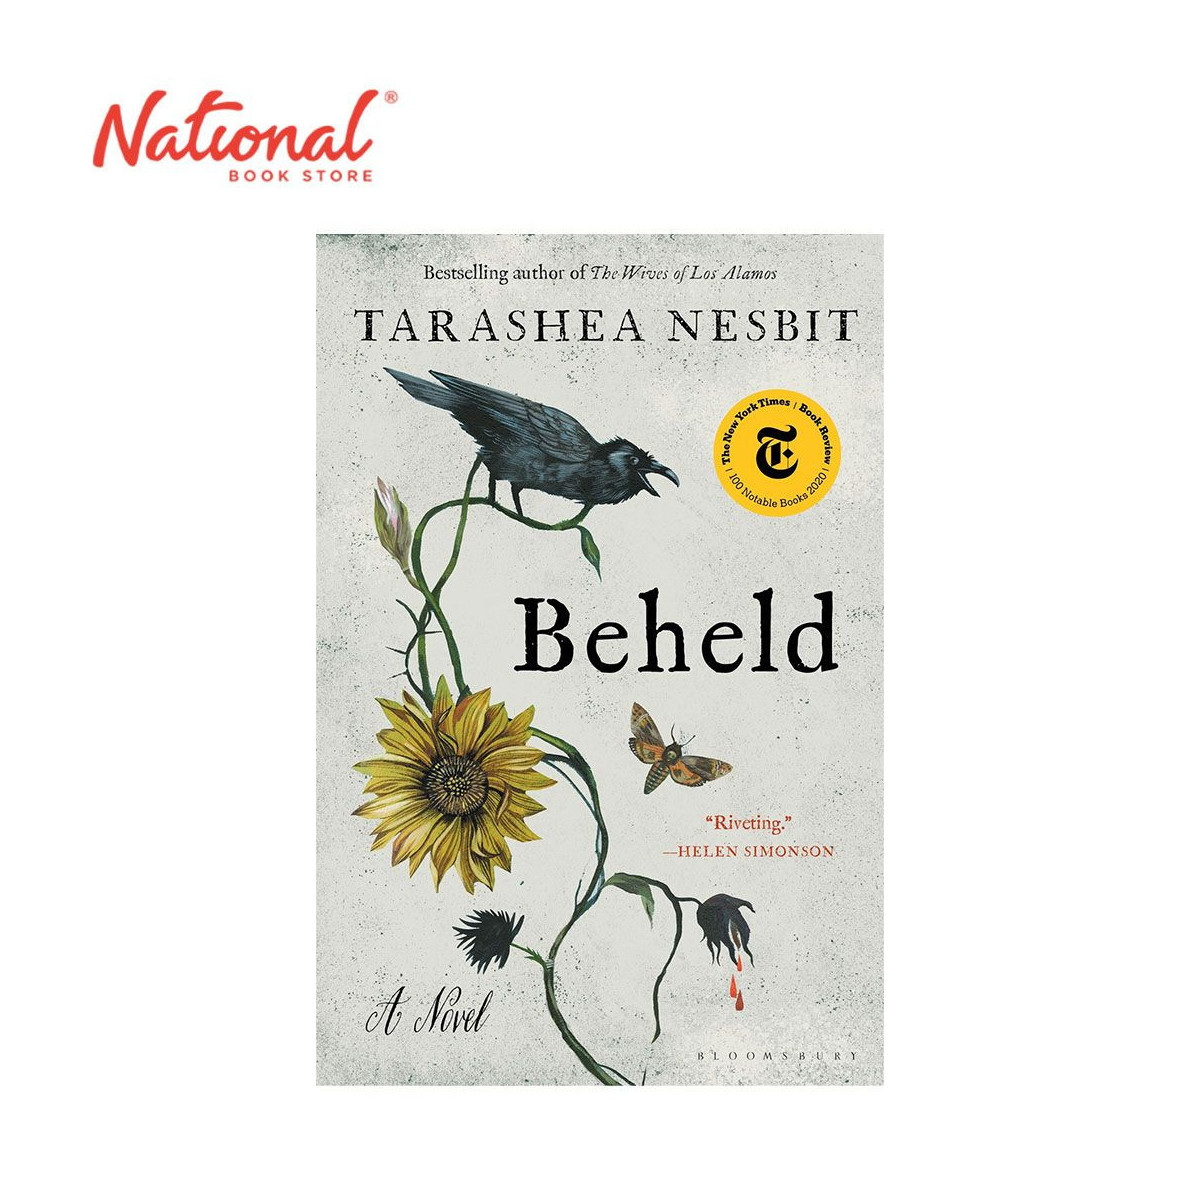 Beheld: A Novel by TaraShea Nesbit - Trade Paperback - Thriller, Mystery & Suspense